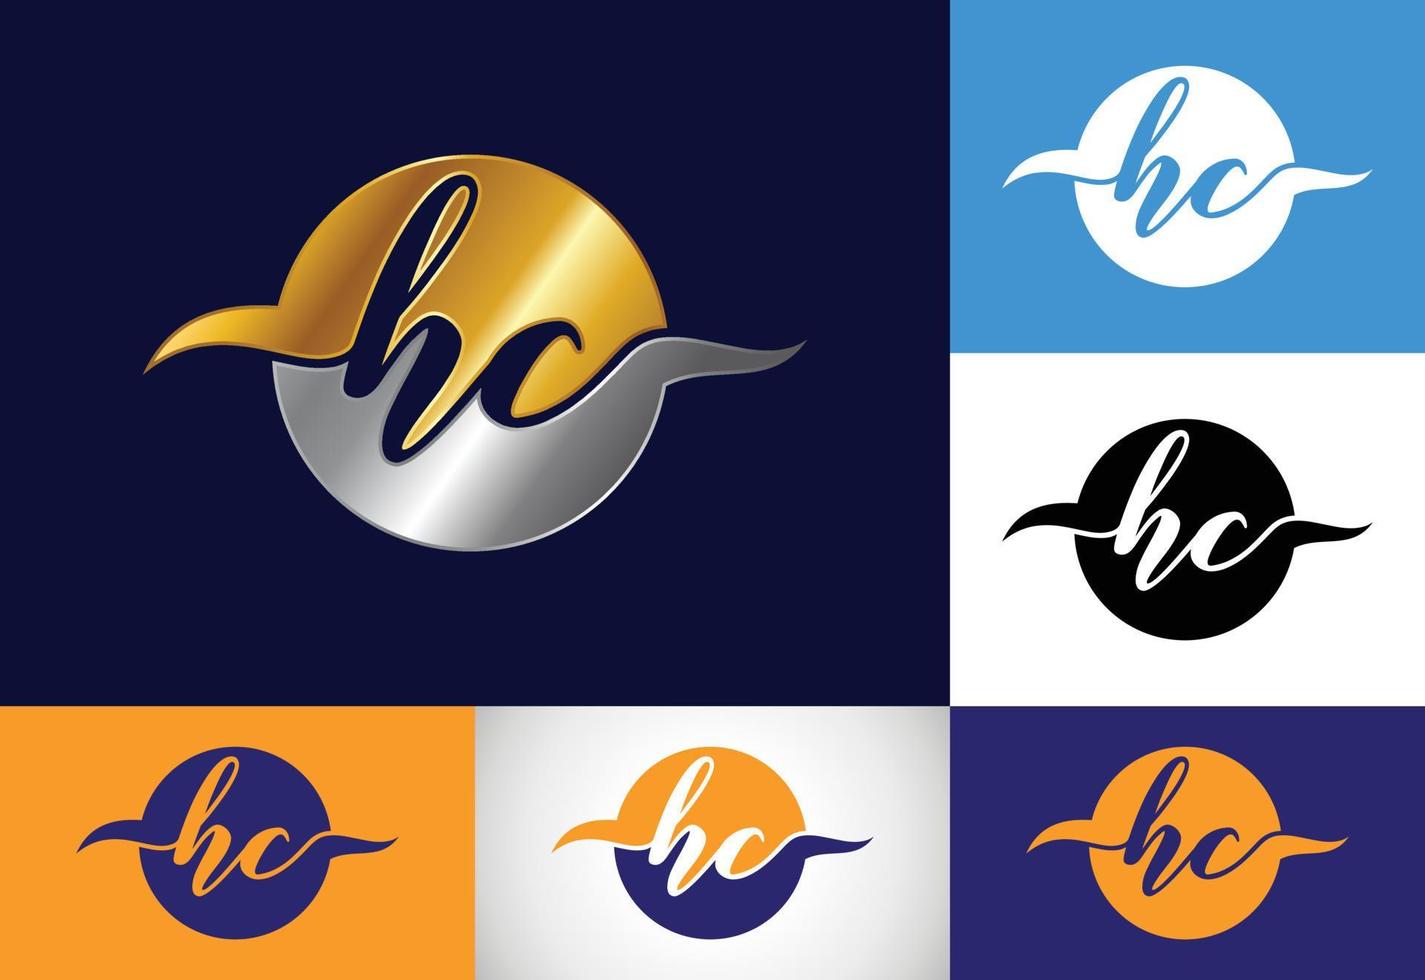 vetor de design de logotipo de letra inicial hc. símbolo gráfico do alfabeto para identidade de negócios corporativos